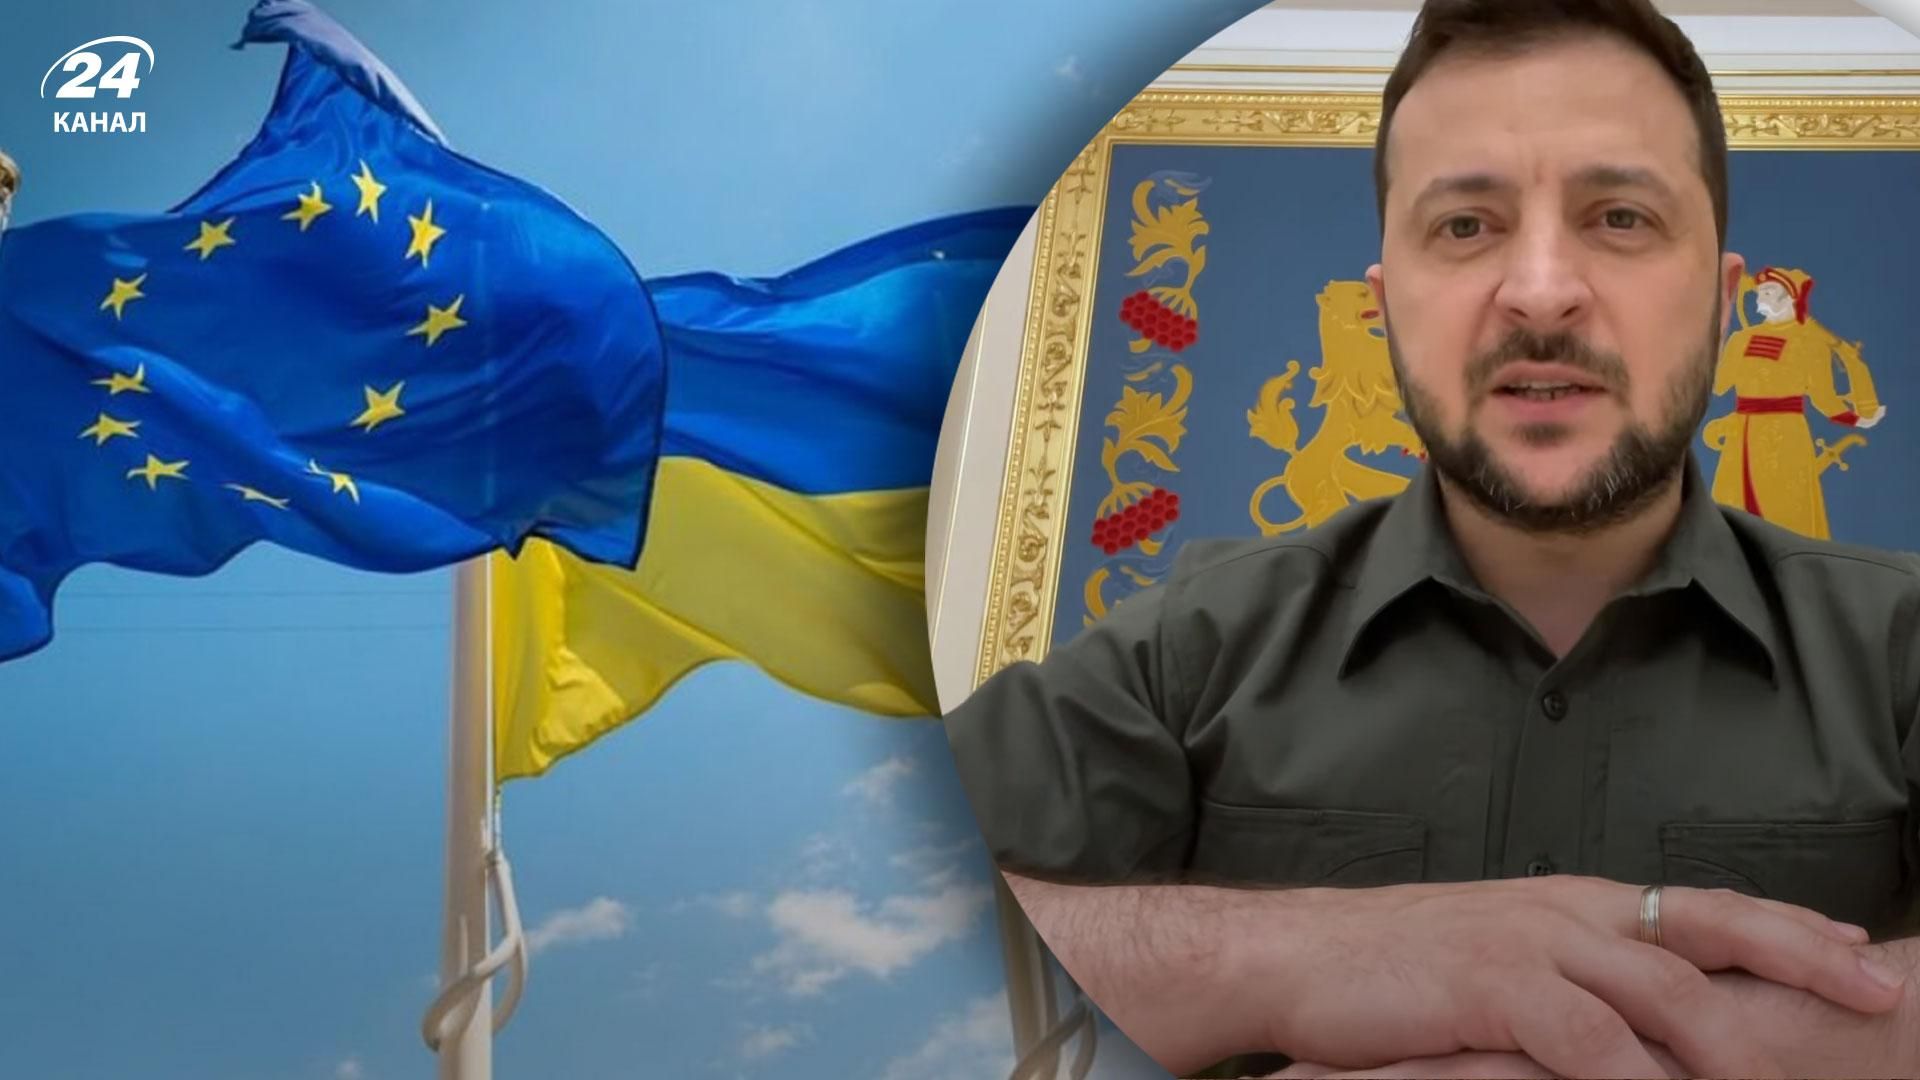 Украина – в шаге от интеграции с Евросоюзом, – Зеленский о решении Европейского совета